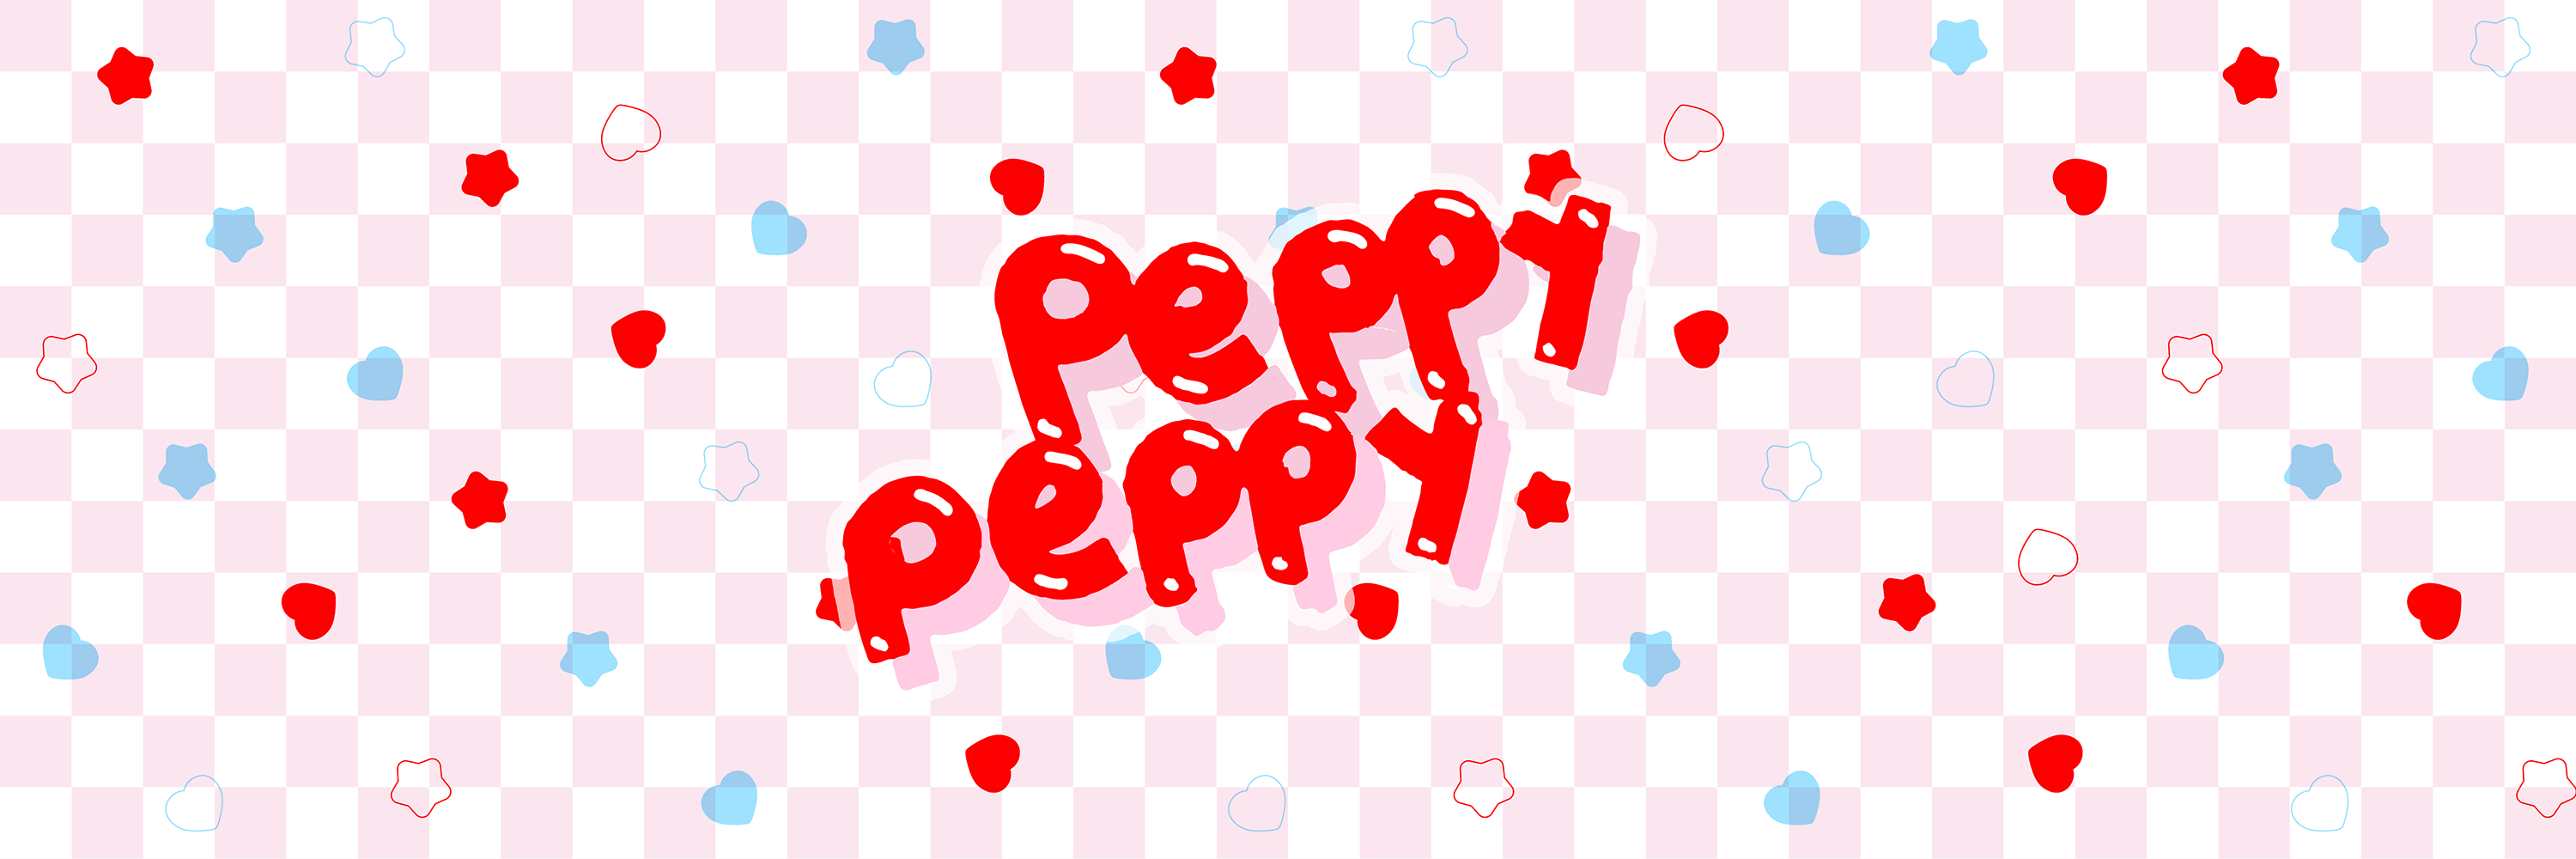 ◆peppy peppy◆